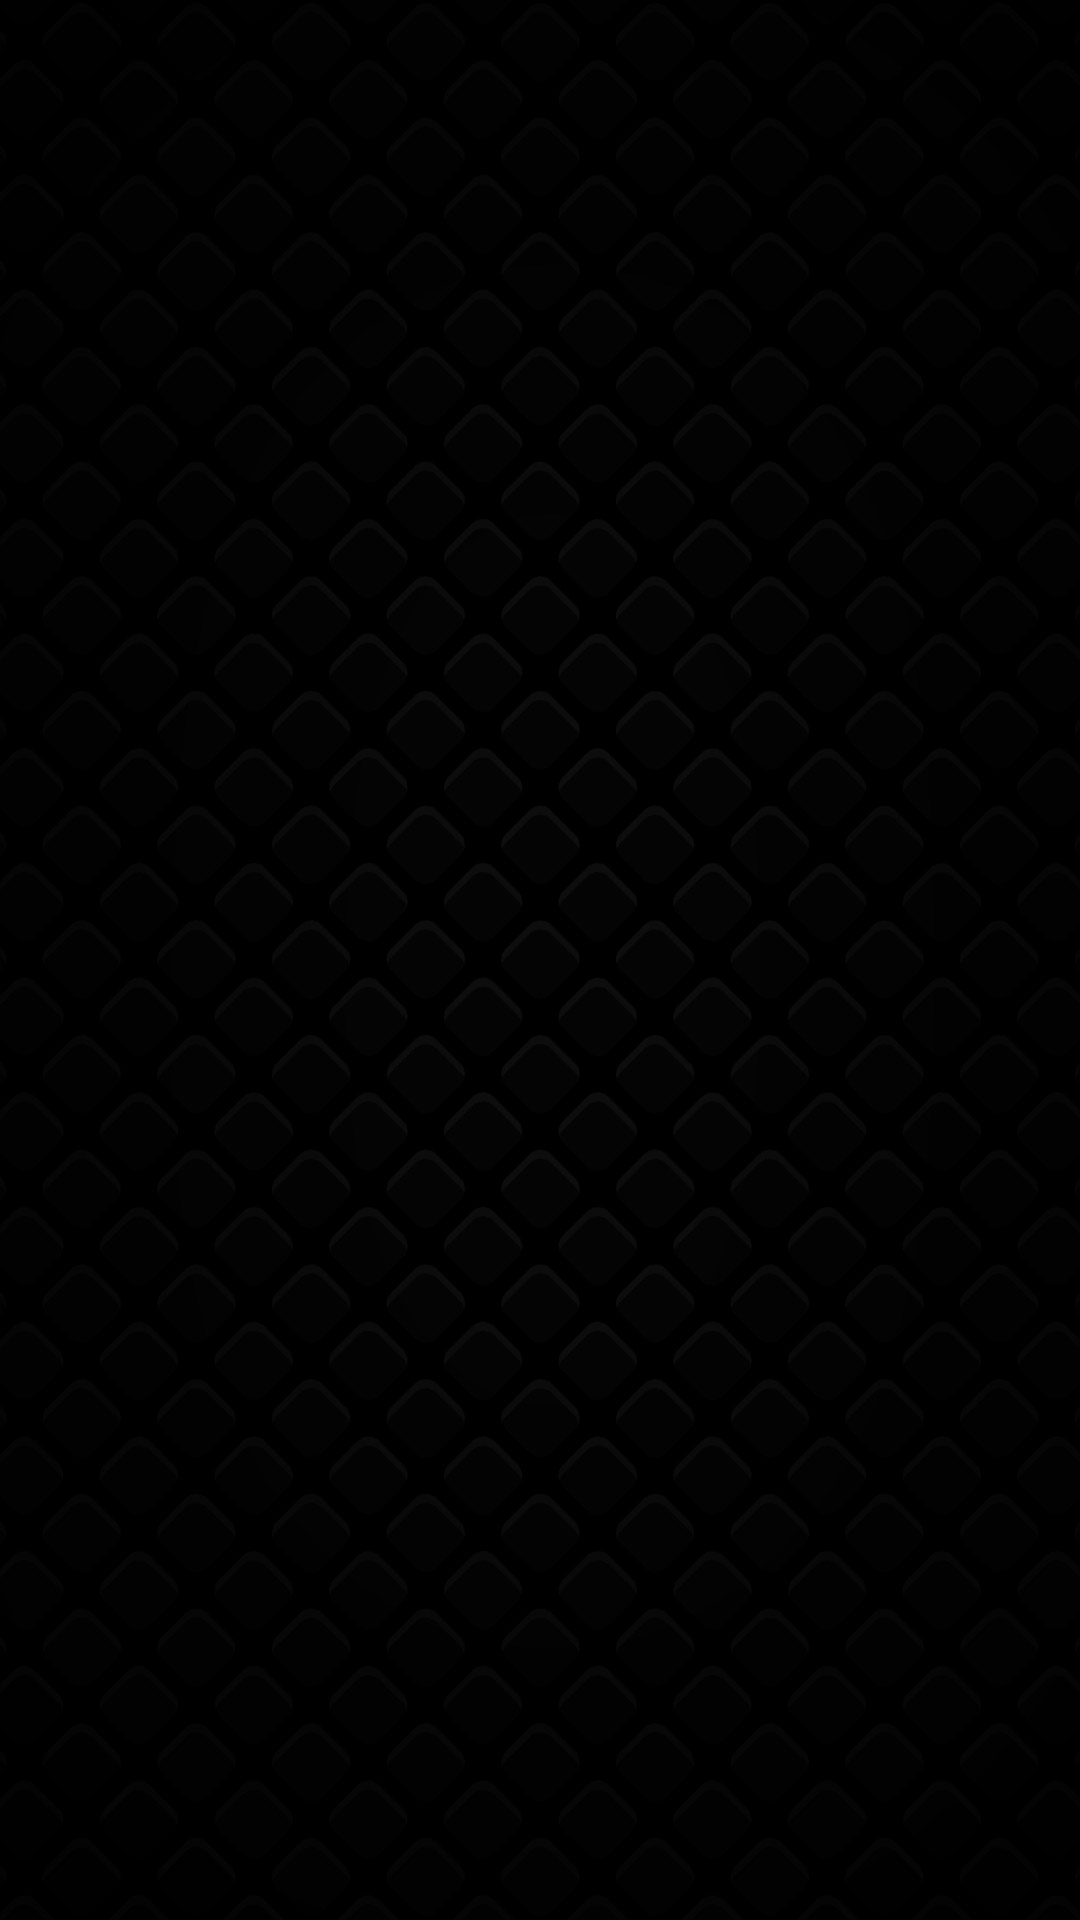 plain black phone wallpaper square